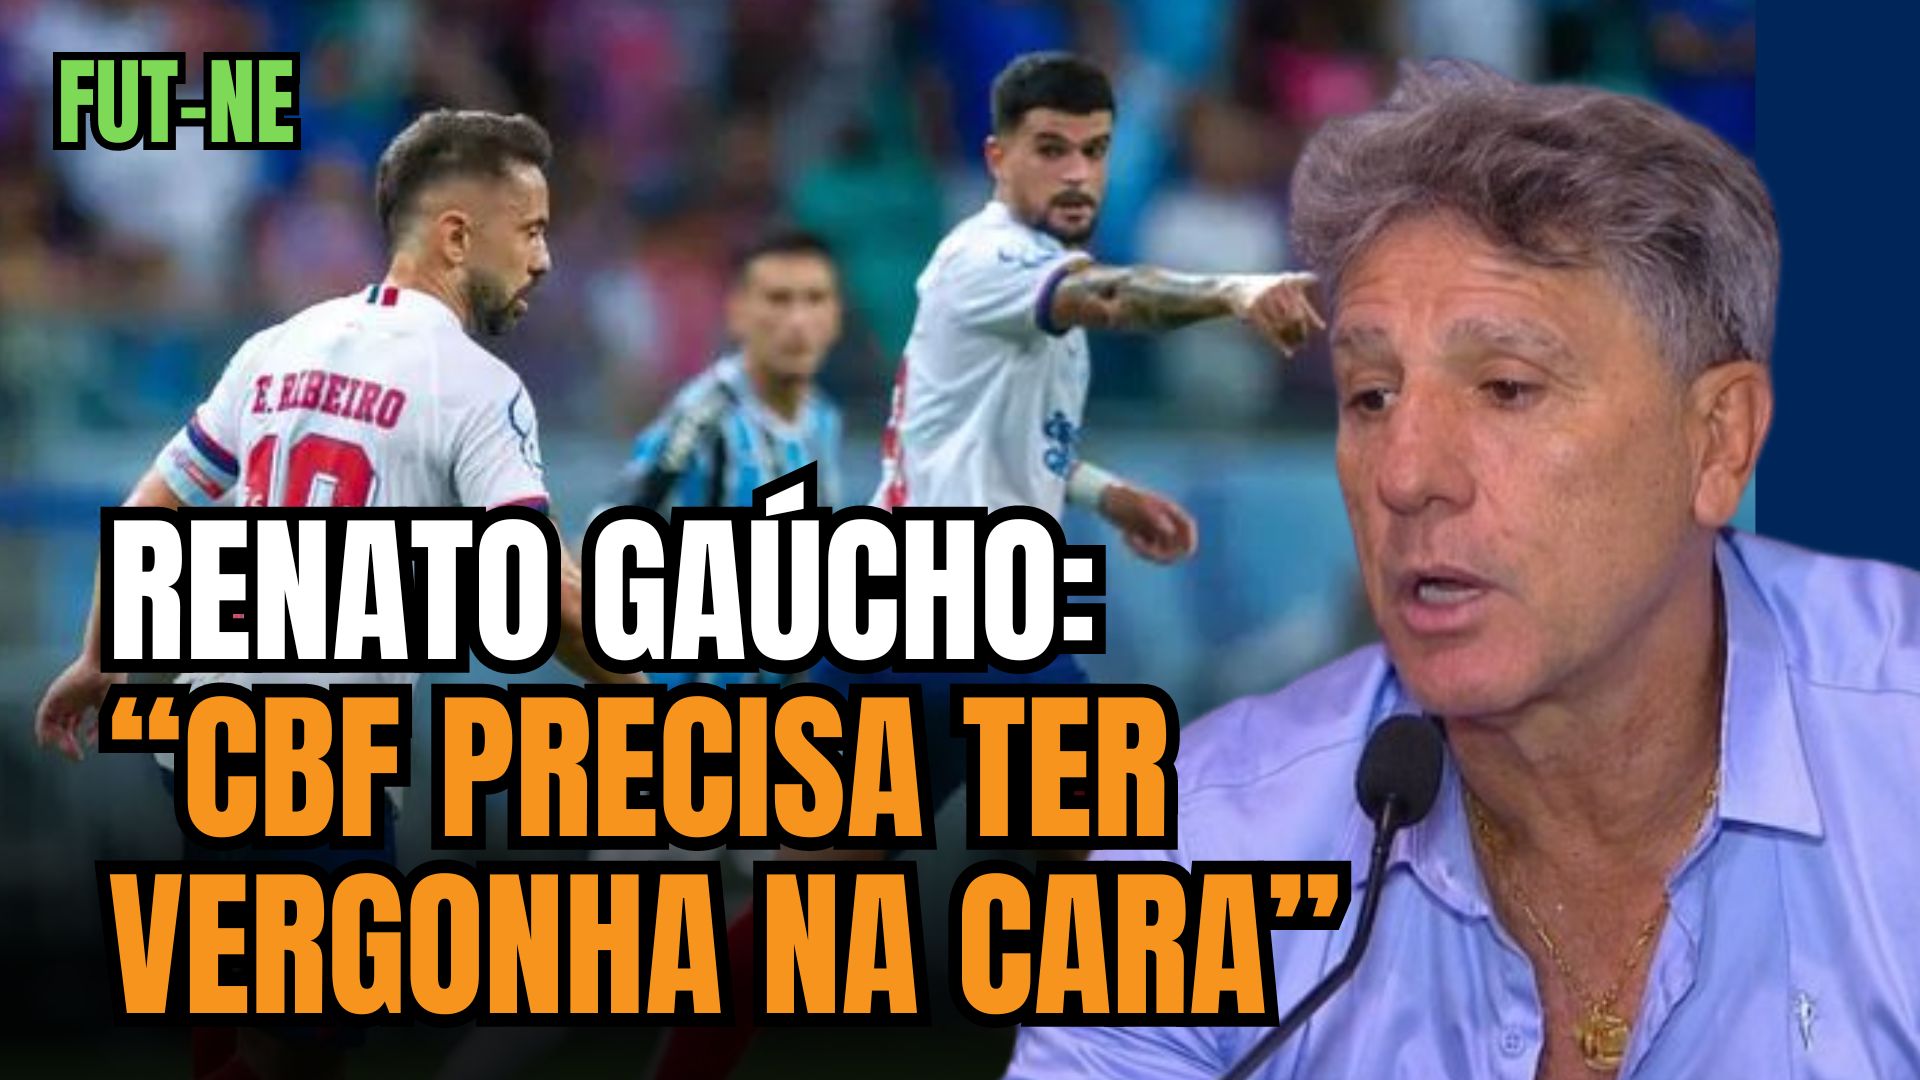 [VIDEO] Após acusação grave de Renato Gaúcho, perfil do Bahia tira onda: "Calma, calabreso"